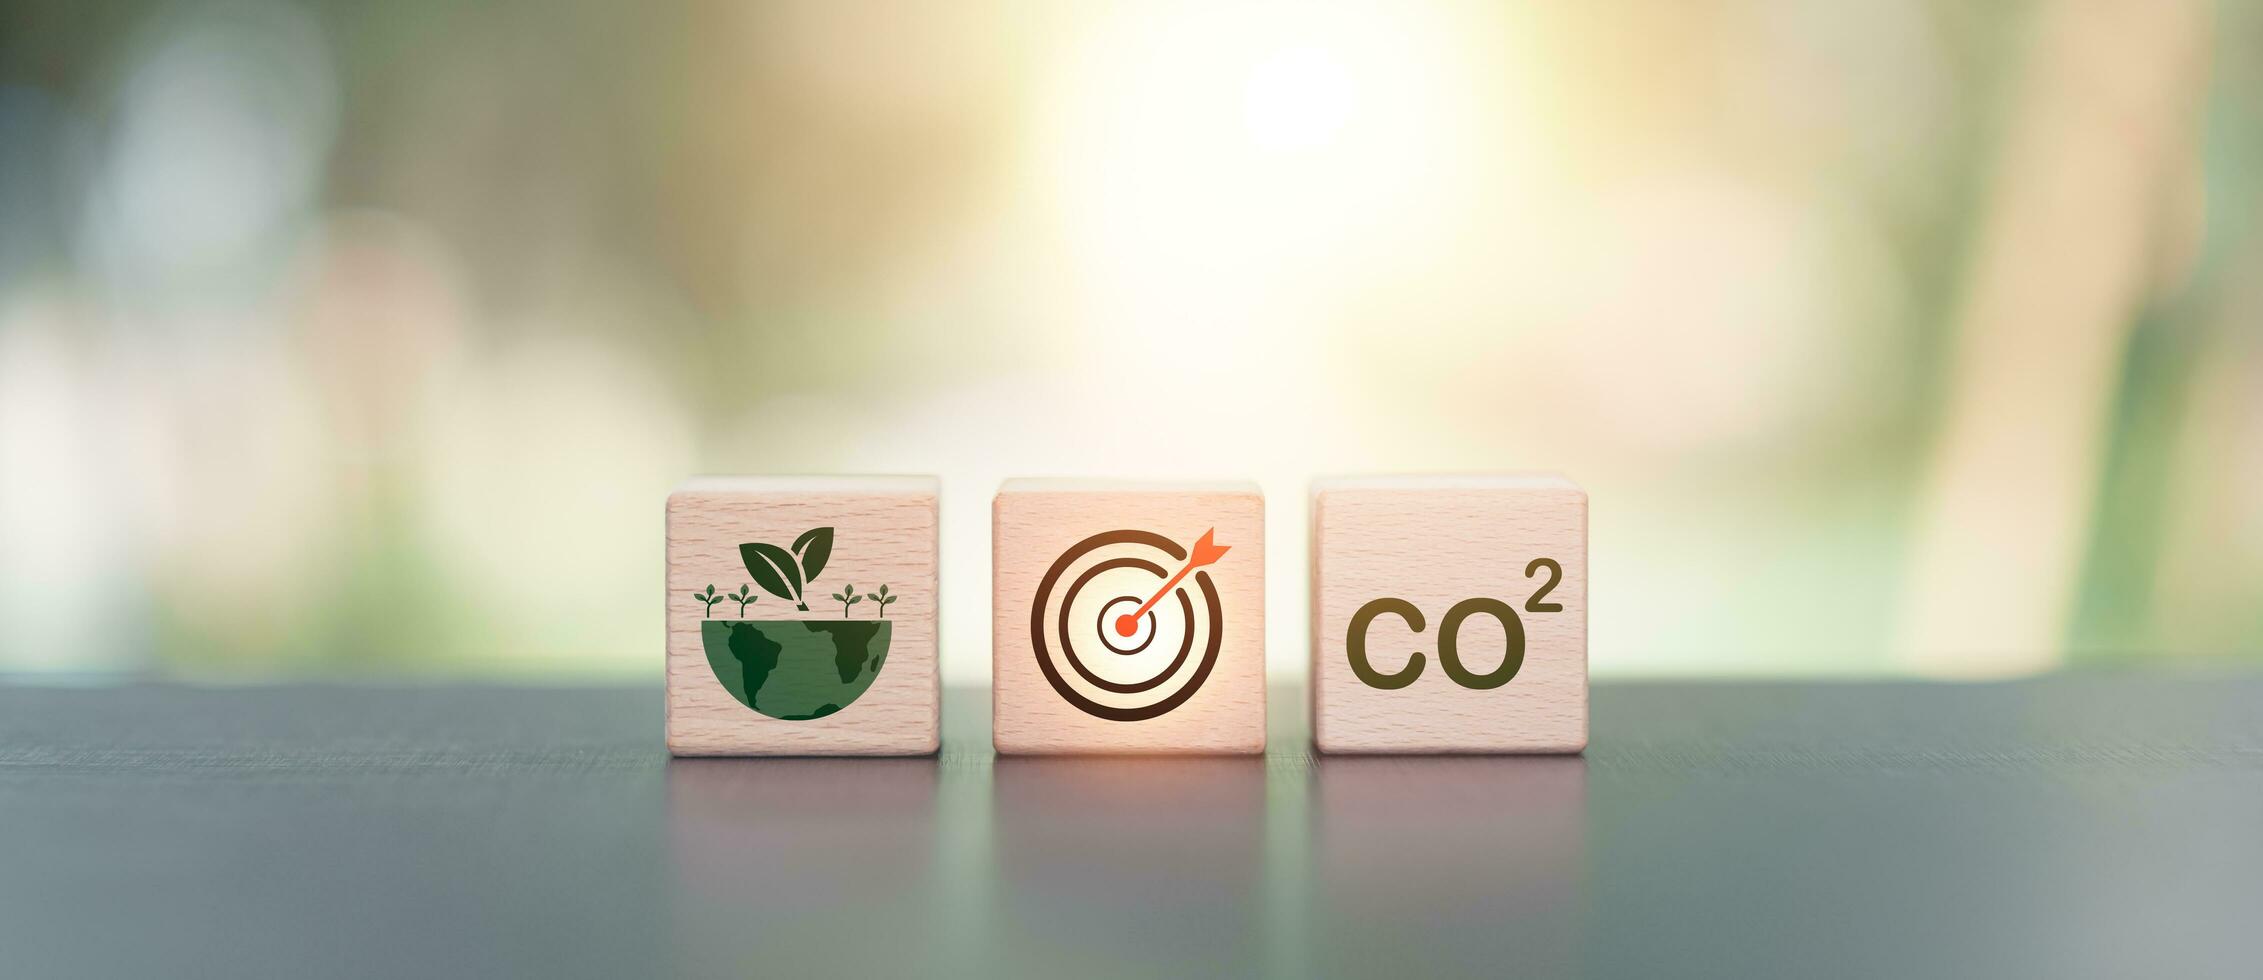 co2 concept ,koolstof dioxide uitstoot en industrieel verontreiniging oorzaken milieu en ecologisch problemen ,koolstof hernieuwbaar energie overeenkomst , milieuvriendelijk vriendelijk industrie foto